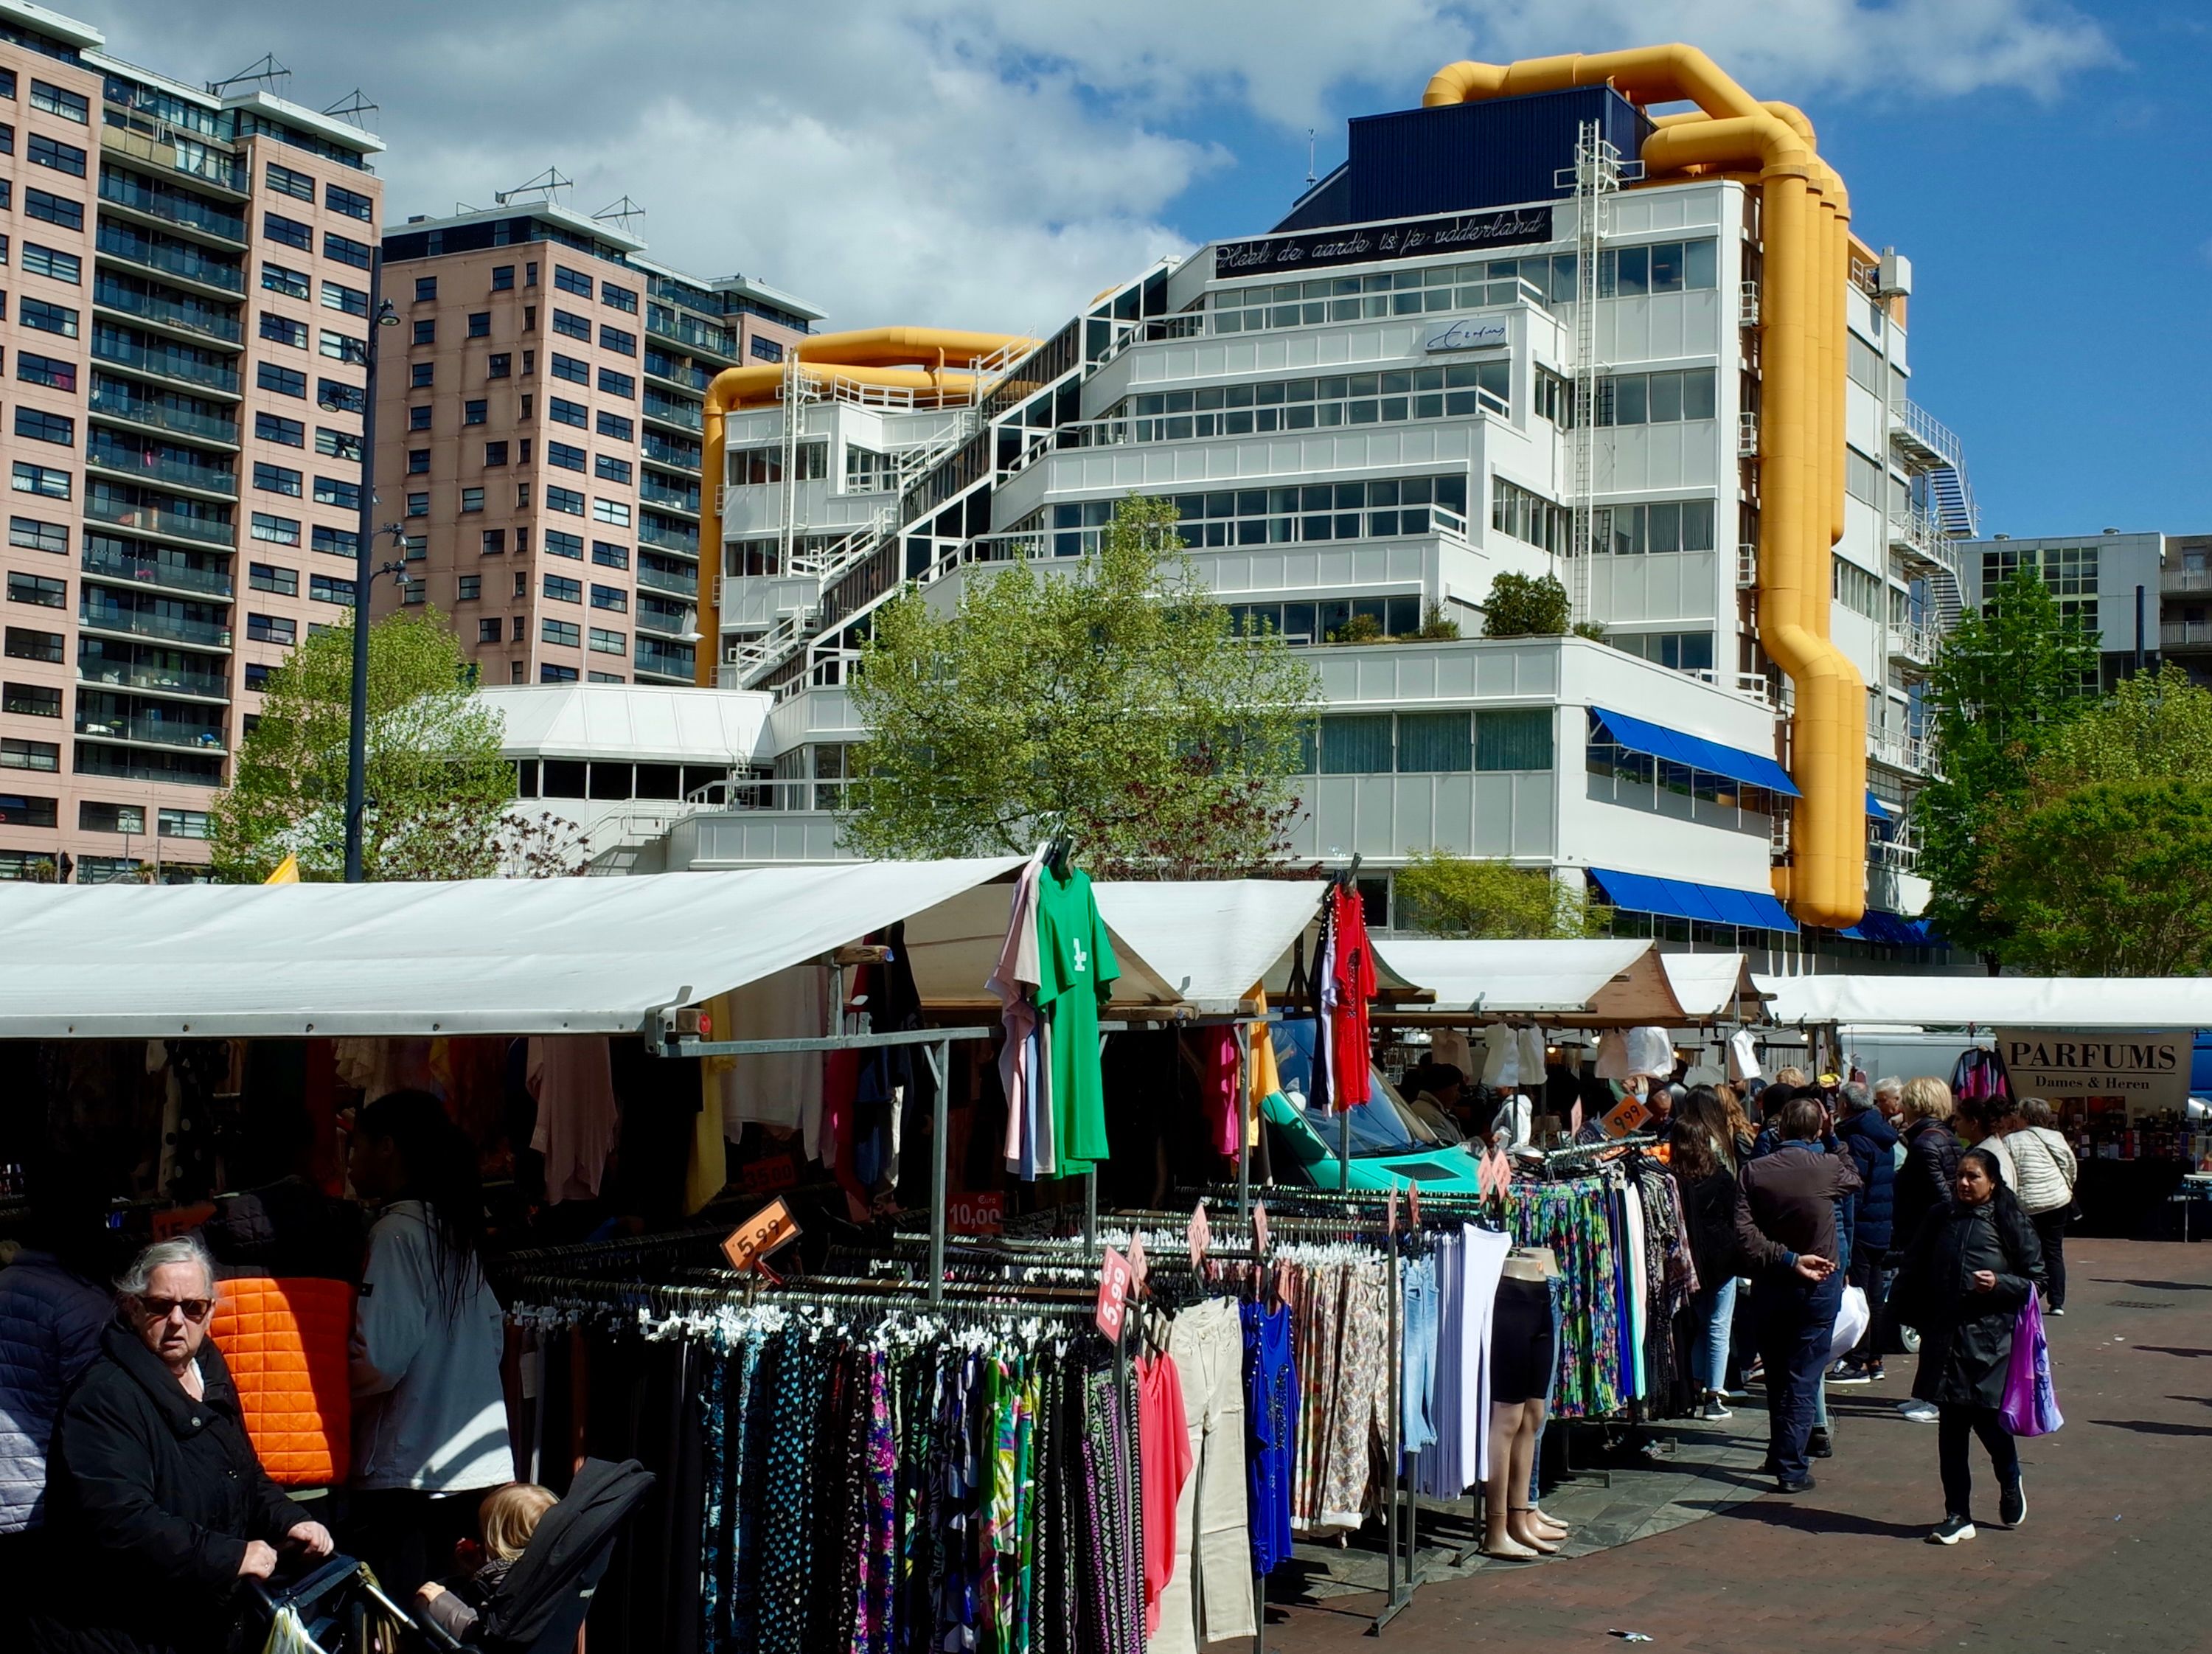 Rotterdam market place